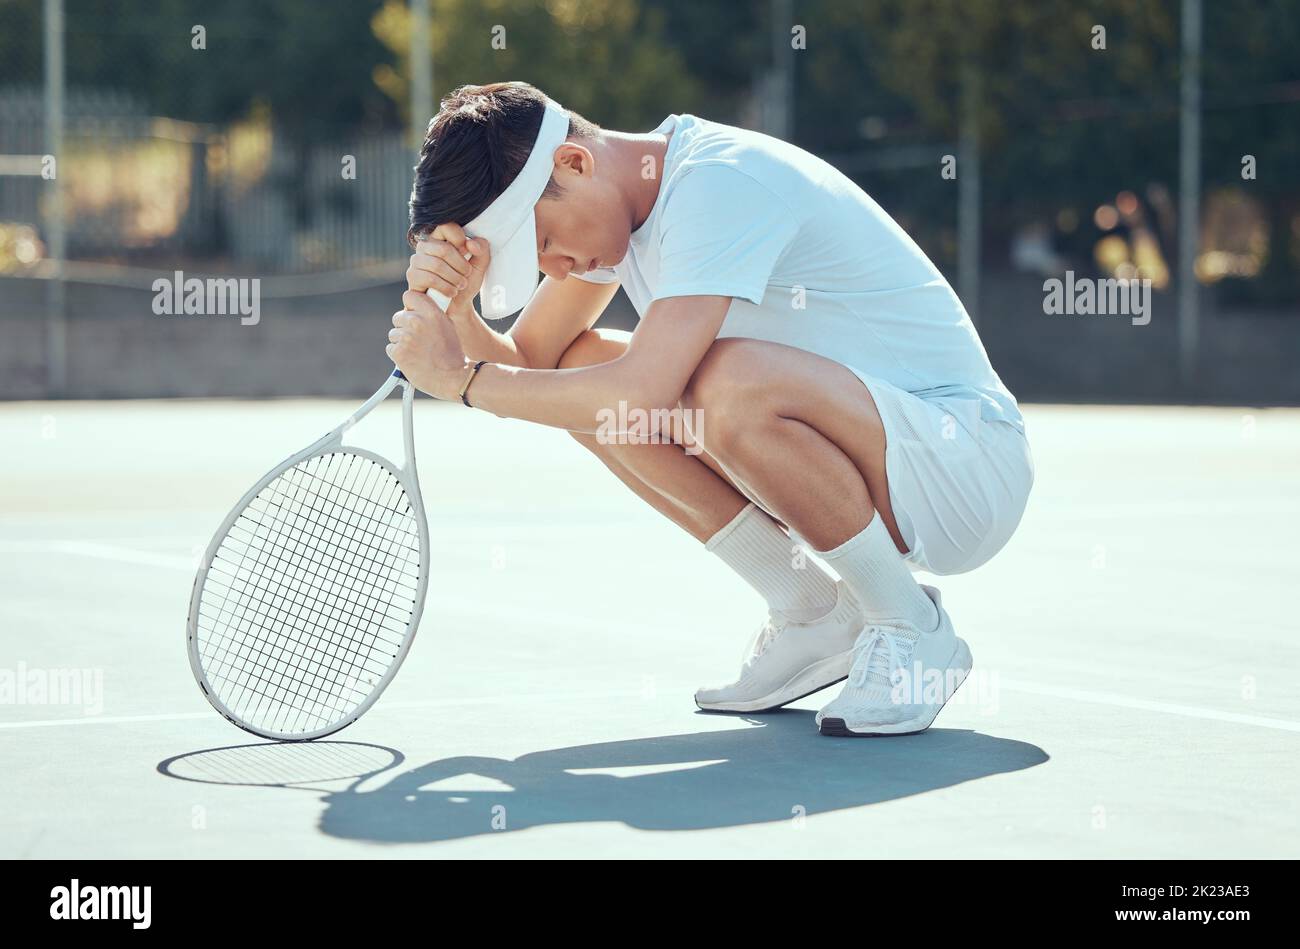 Tennisfehler, man konzentriert sich und betet Position eines Athleten aus China traurig über Sportmatch Ergebnisse. Fitness, Training und Sport-Training von einem starken Stockfoto